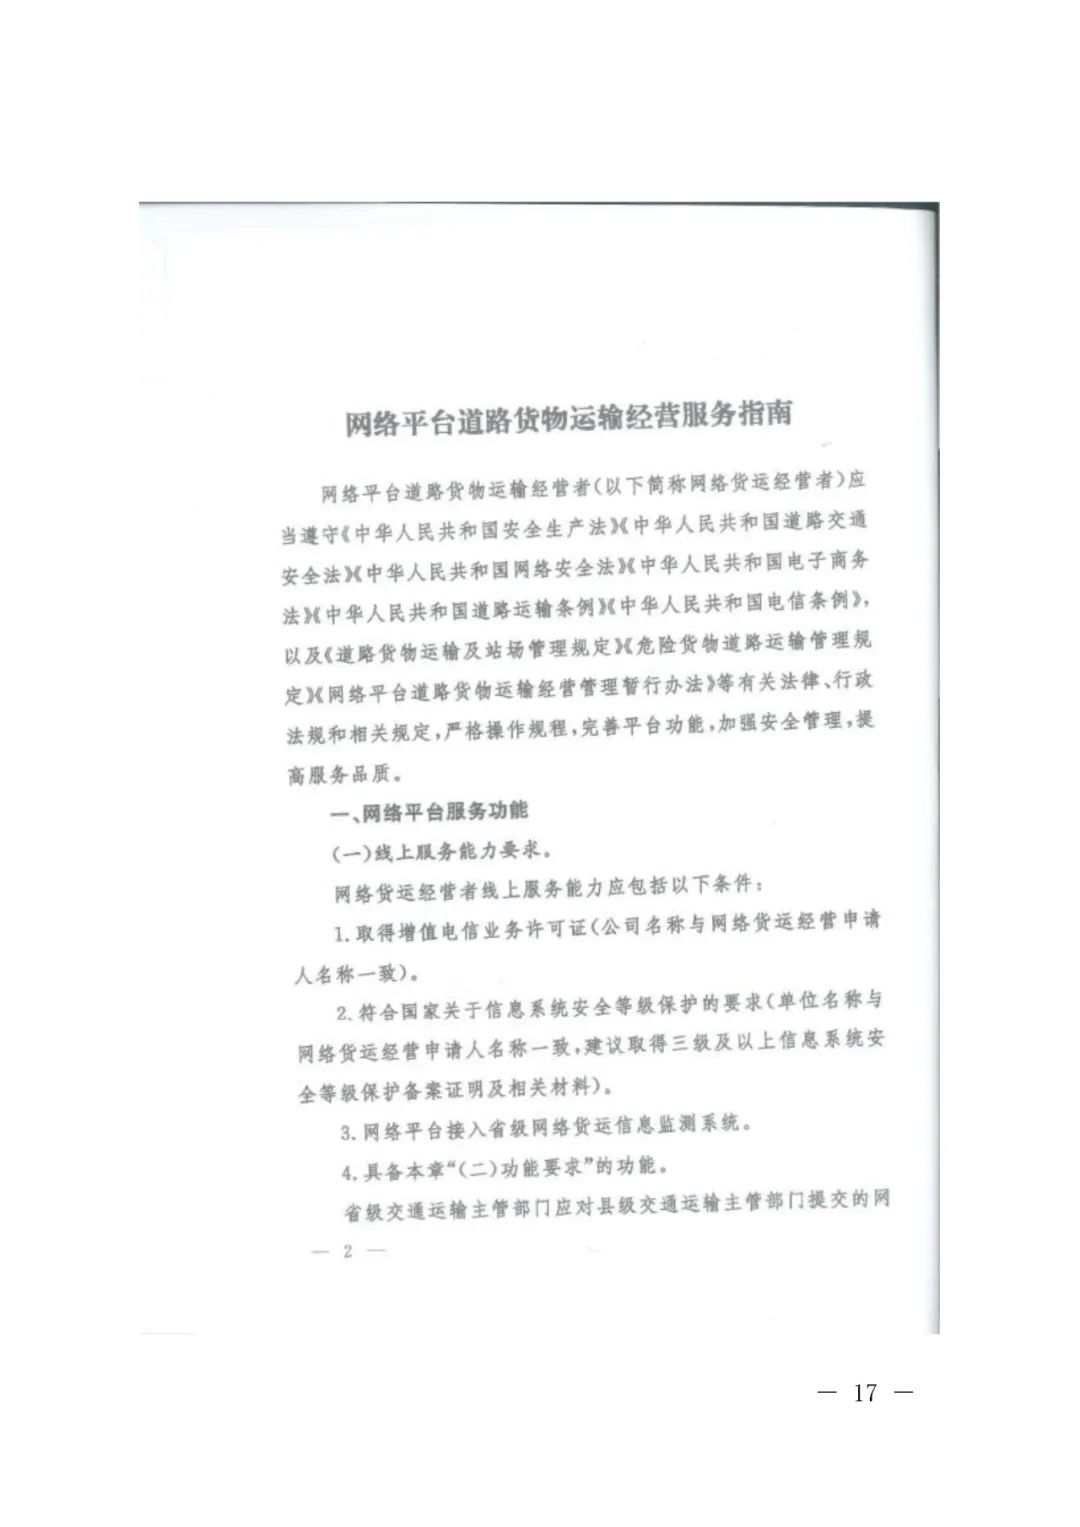 【浙江】关于开展网络平台道路货物运输经营管理工作的通知(图17)